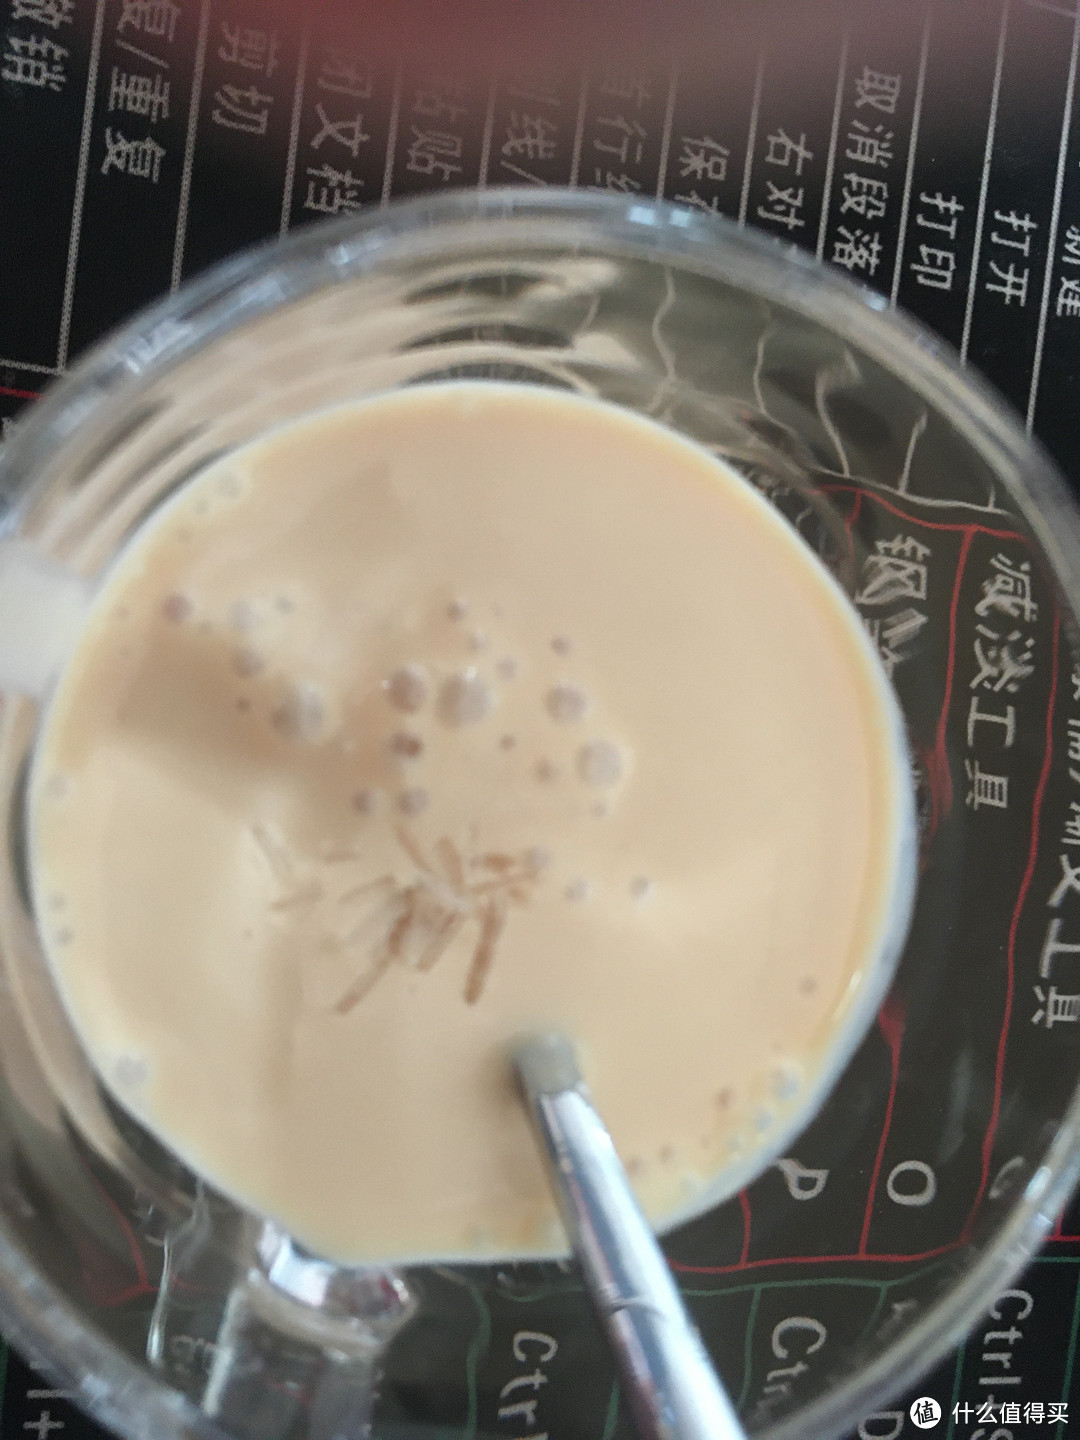 薄荷脑晶体直接撒老酸奶上面就行，热的浓缩咖啡液淋上去就能溶解